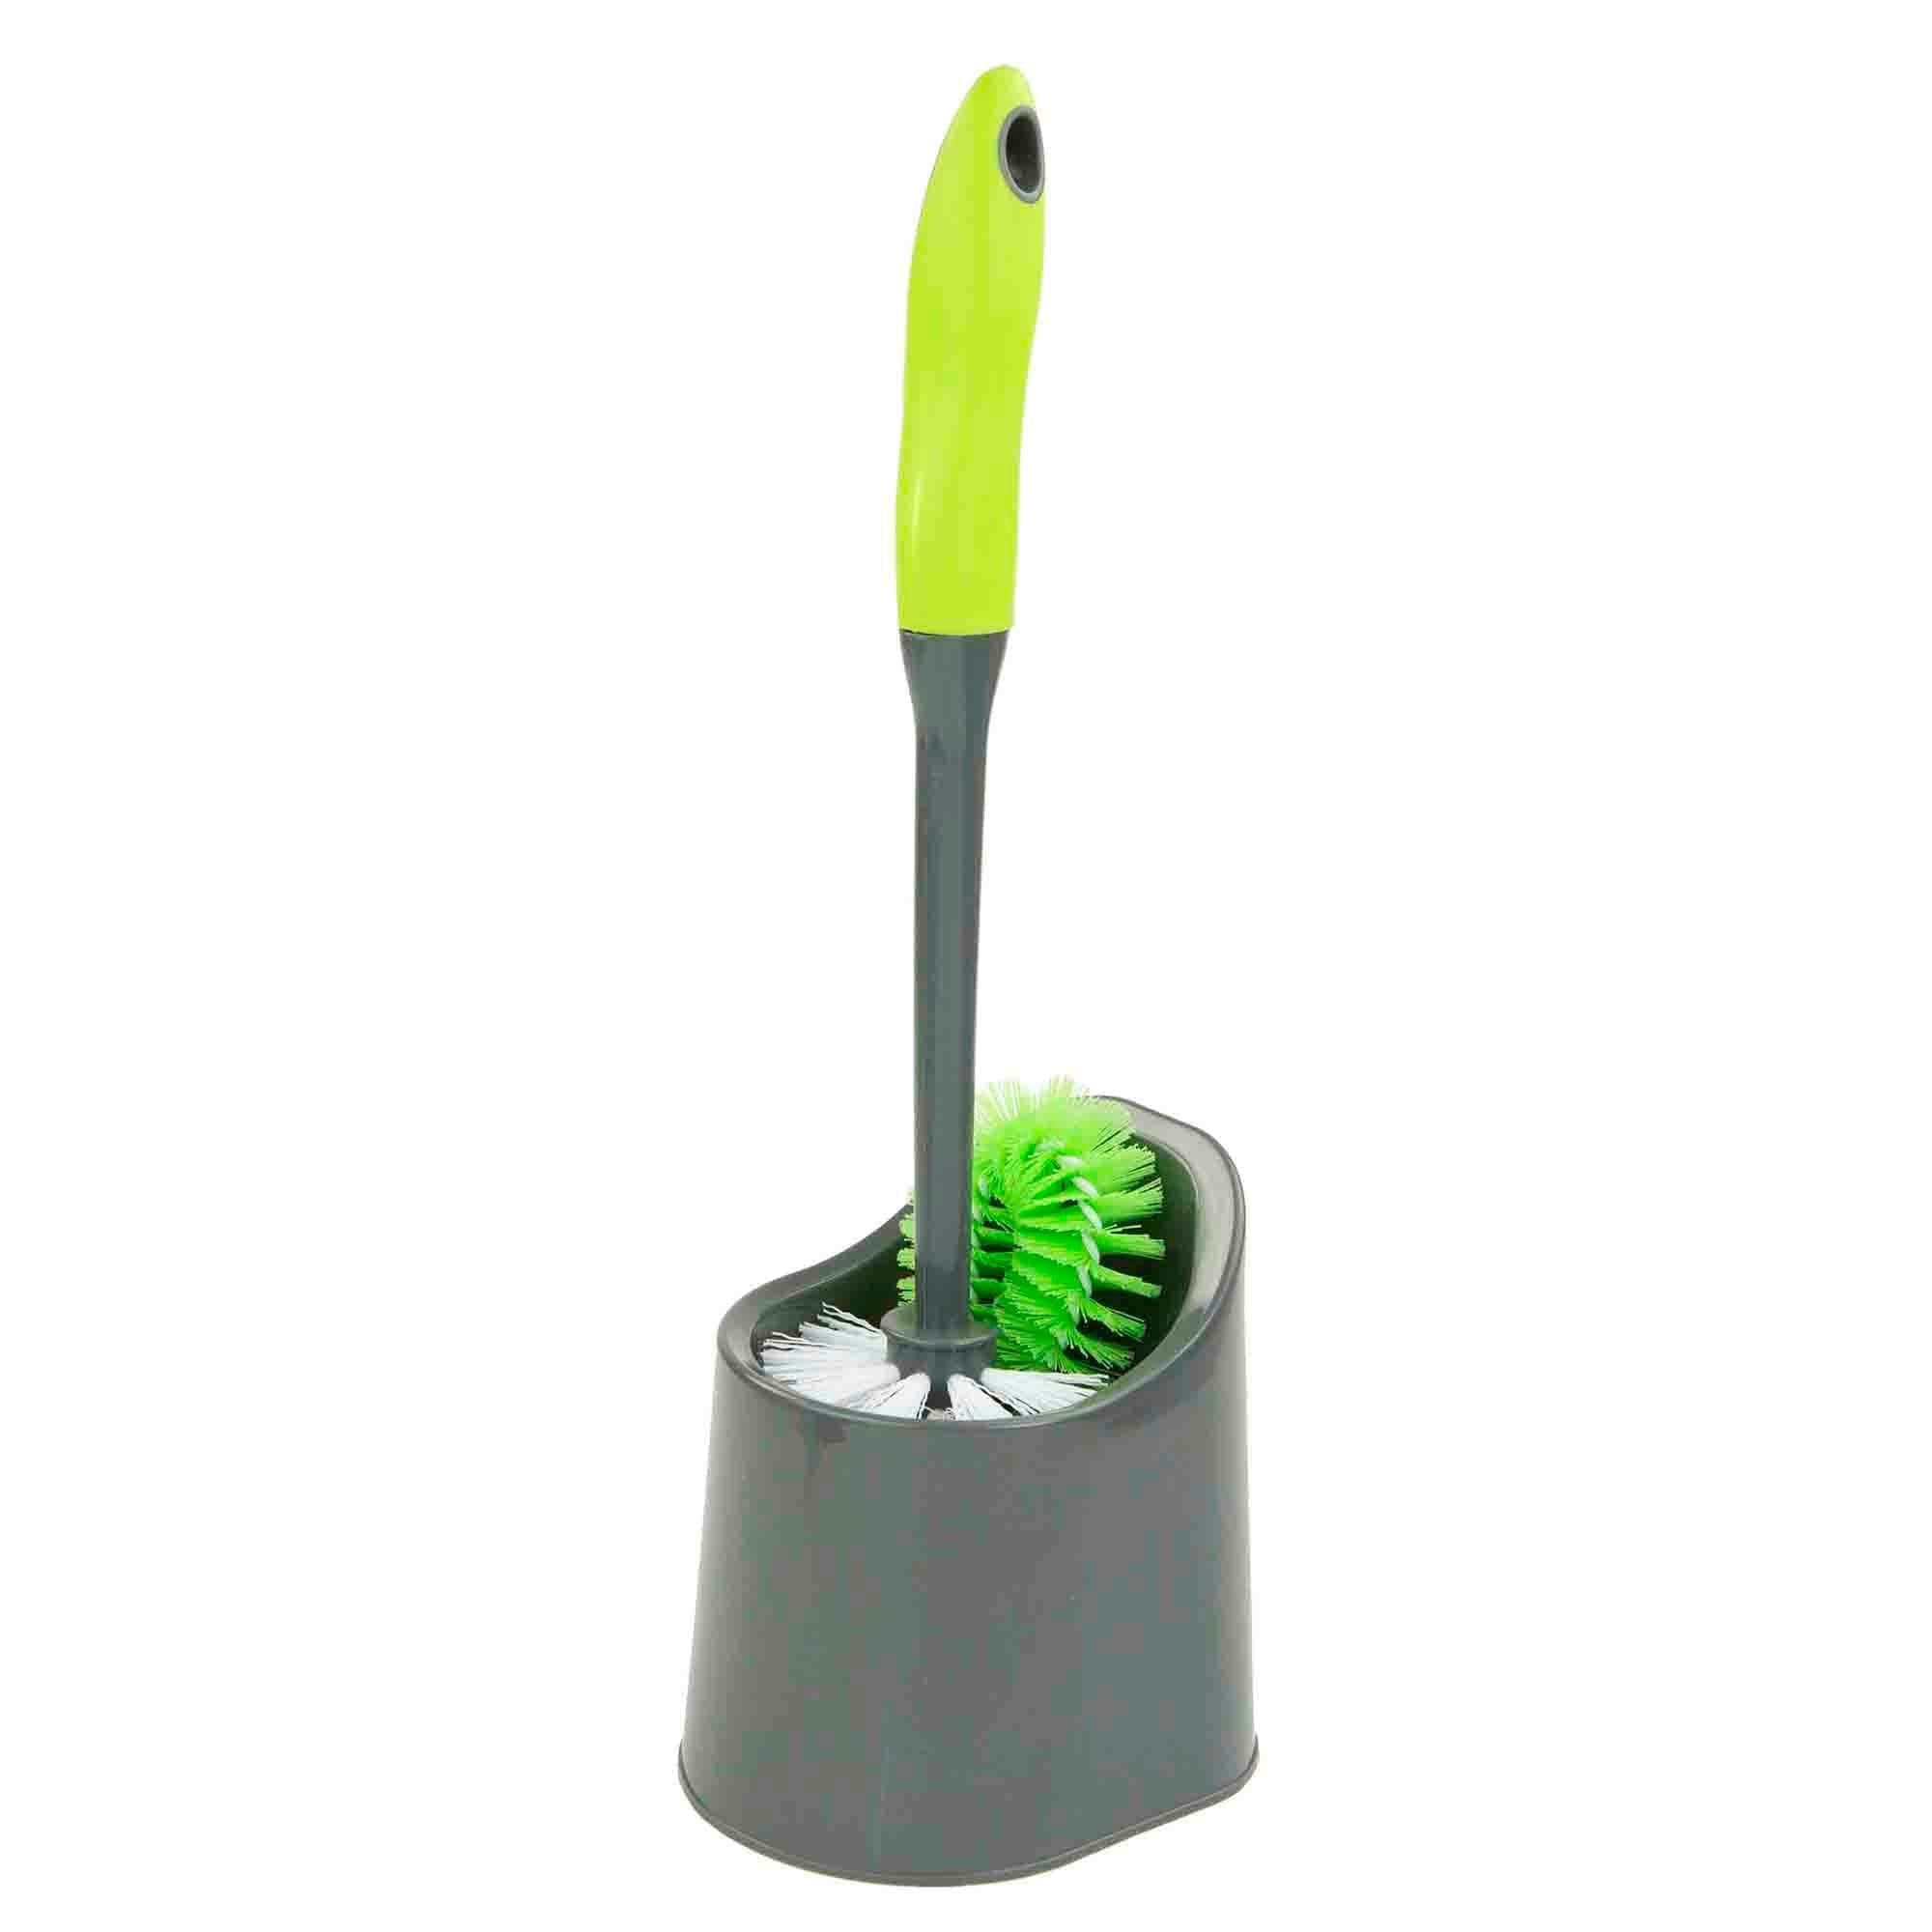 Home Basics Brilliant Toilet Brush Holder, Grey/Lime $3.50 EACH, CASE PACK OF 12